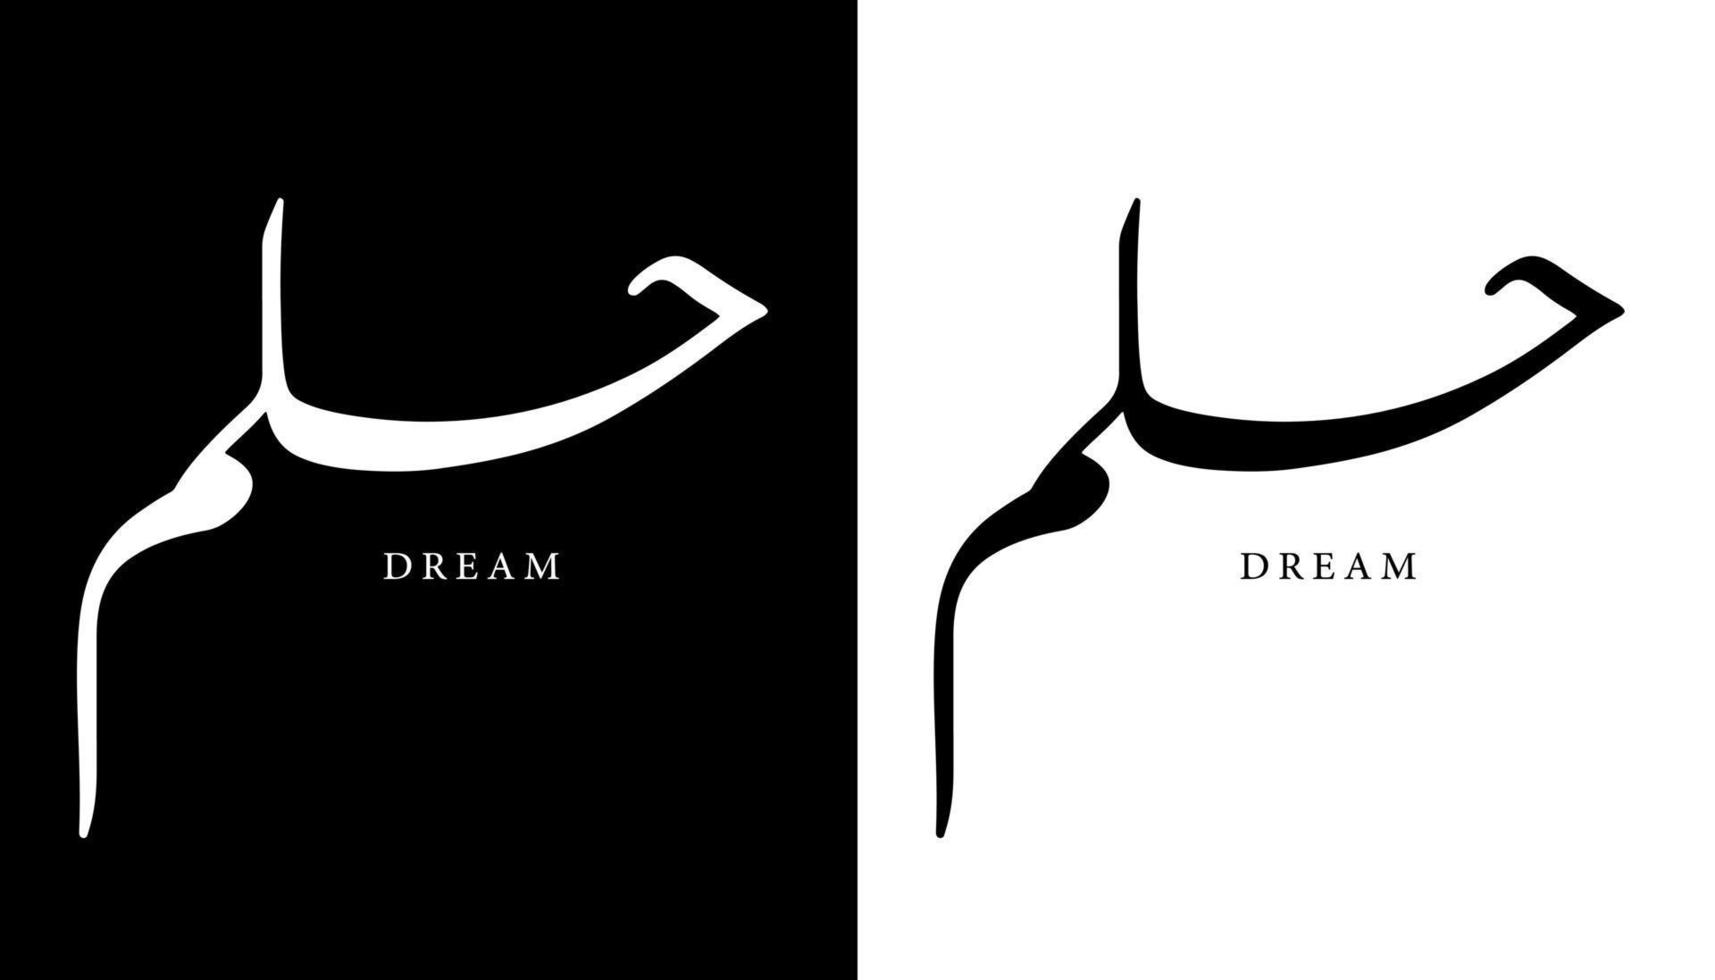 arabisk kalligrafi namn översatt "dröm" arabiska bokstäver alfabet teckensnitt bokstäver islamisk logotyp vektorillustration vektor